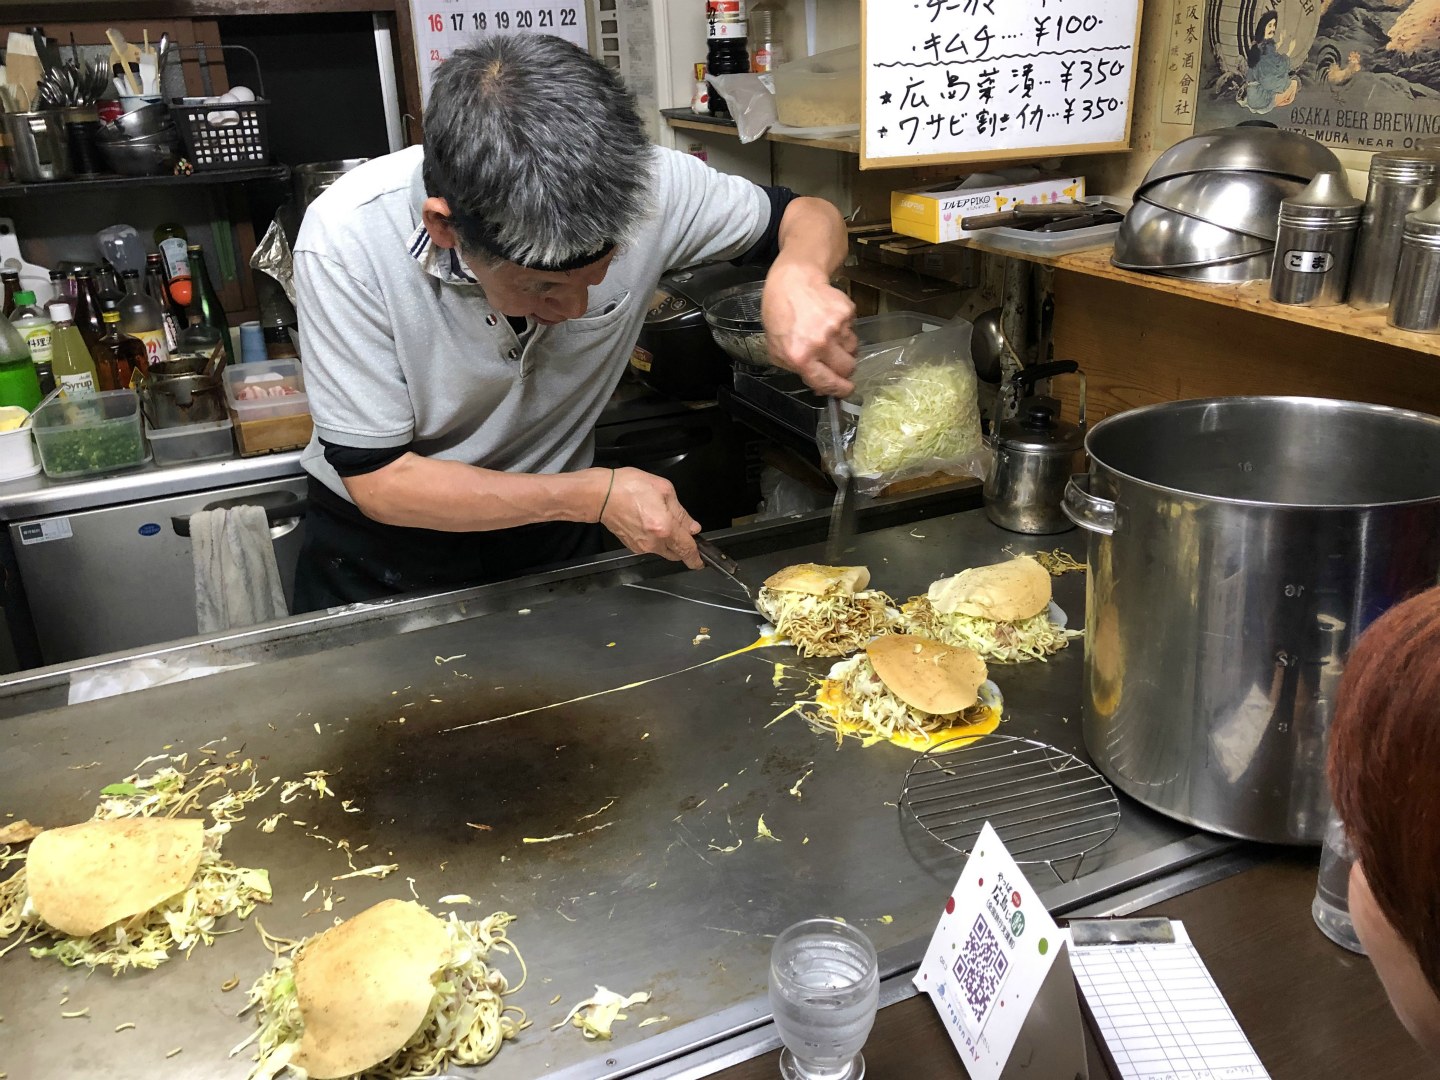 Preparing Okonomiyaki, Hiroshima